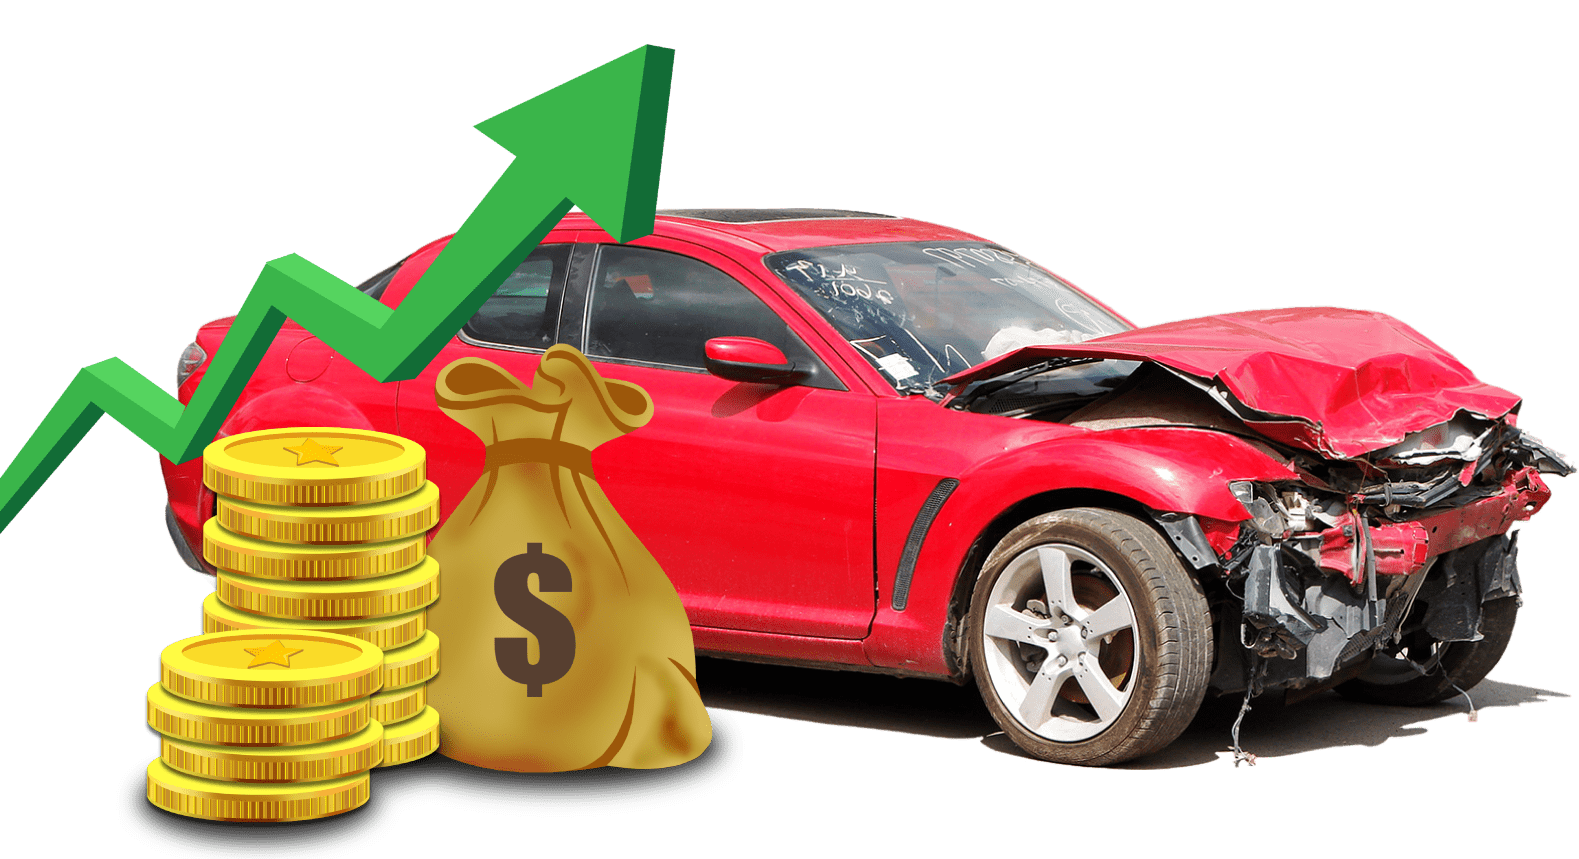  Cash For Cars broadbeach  